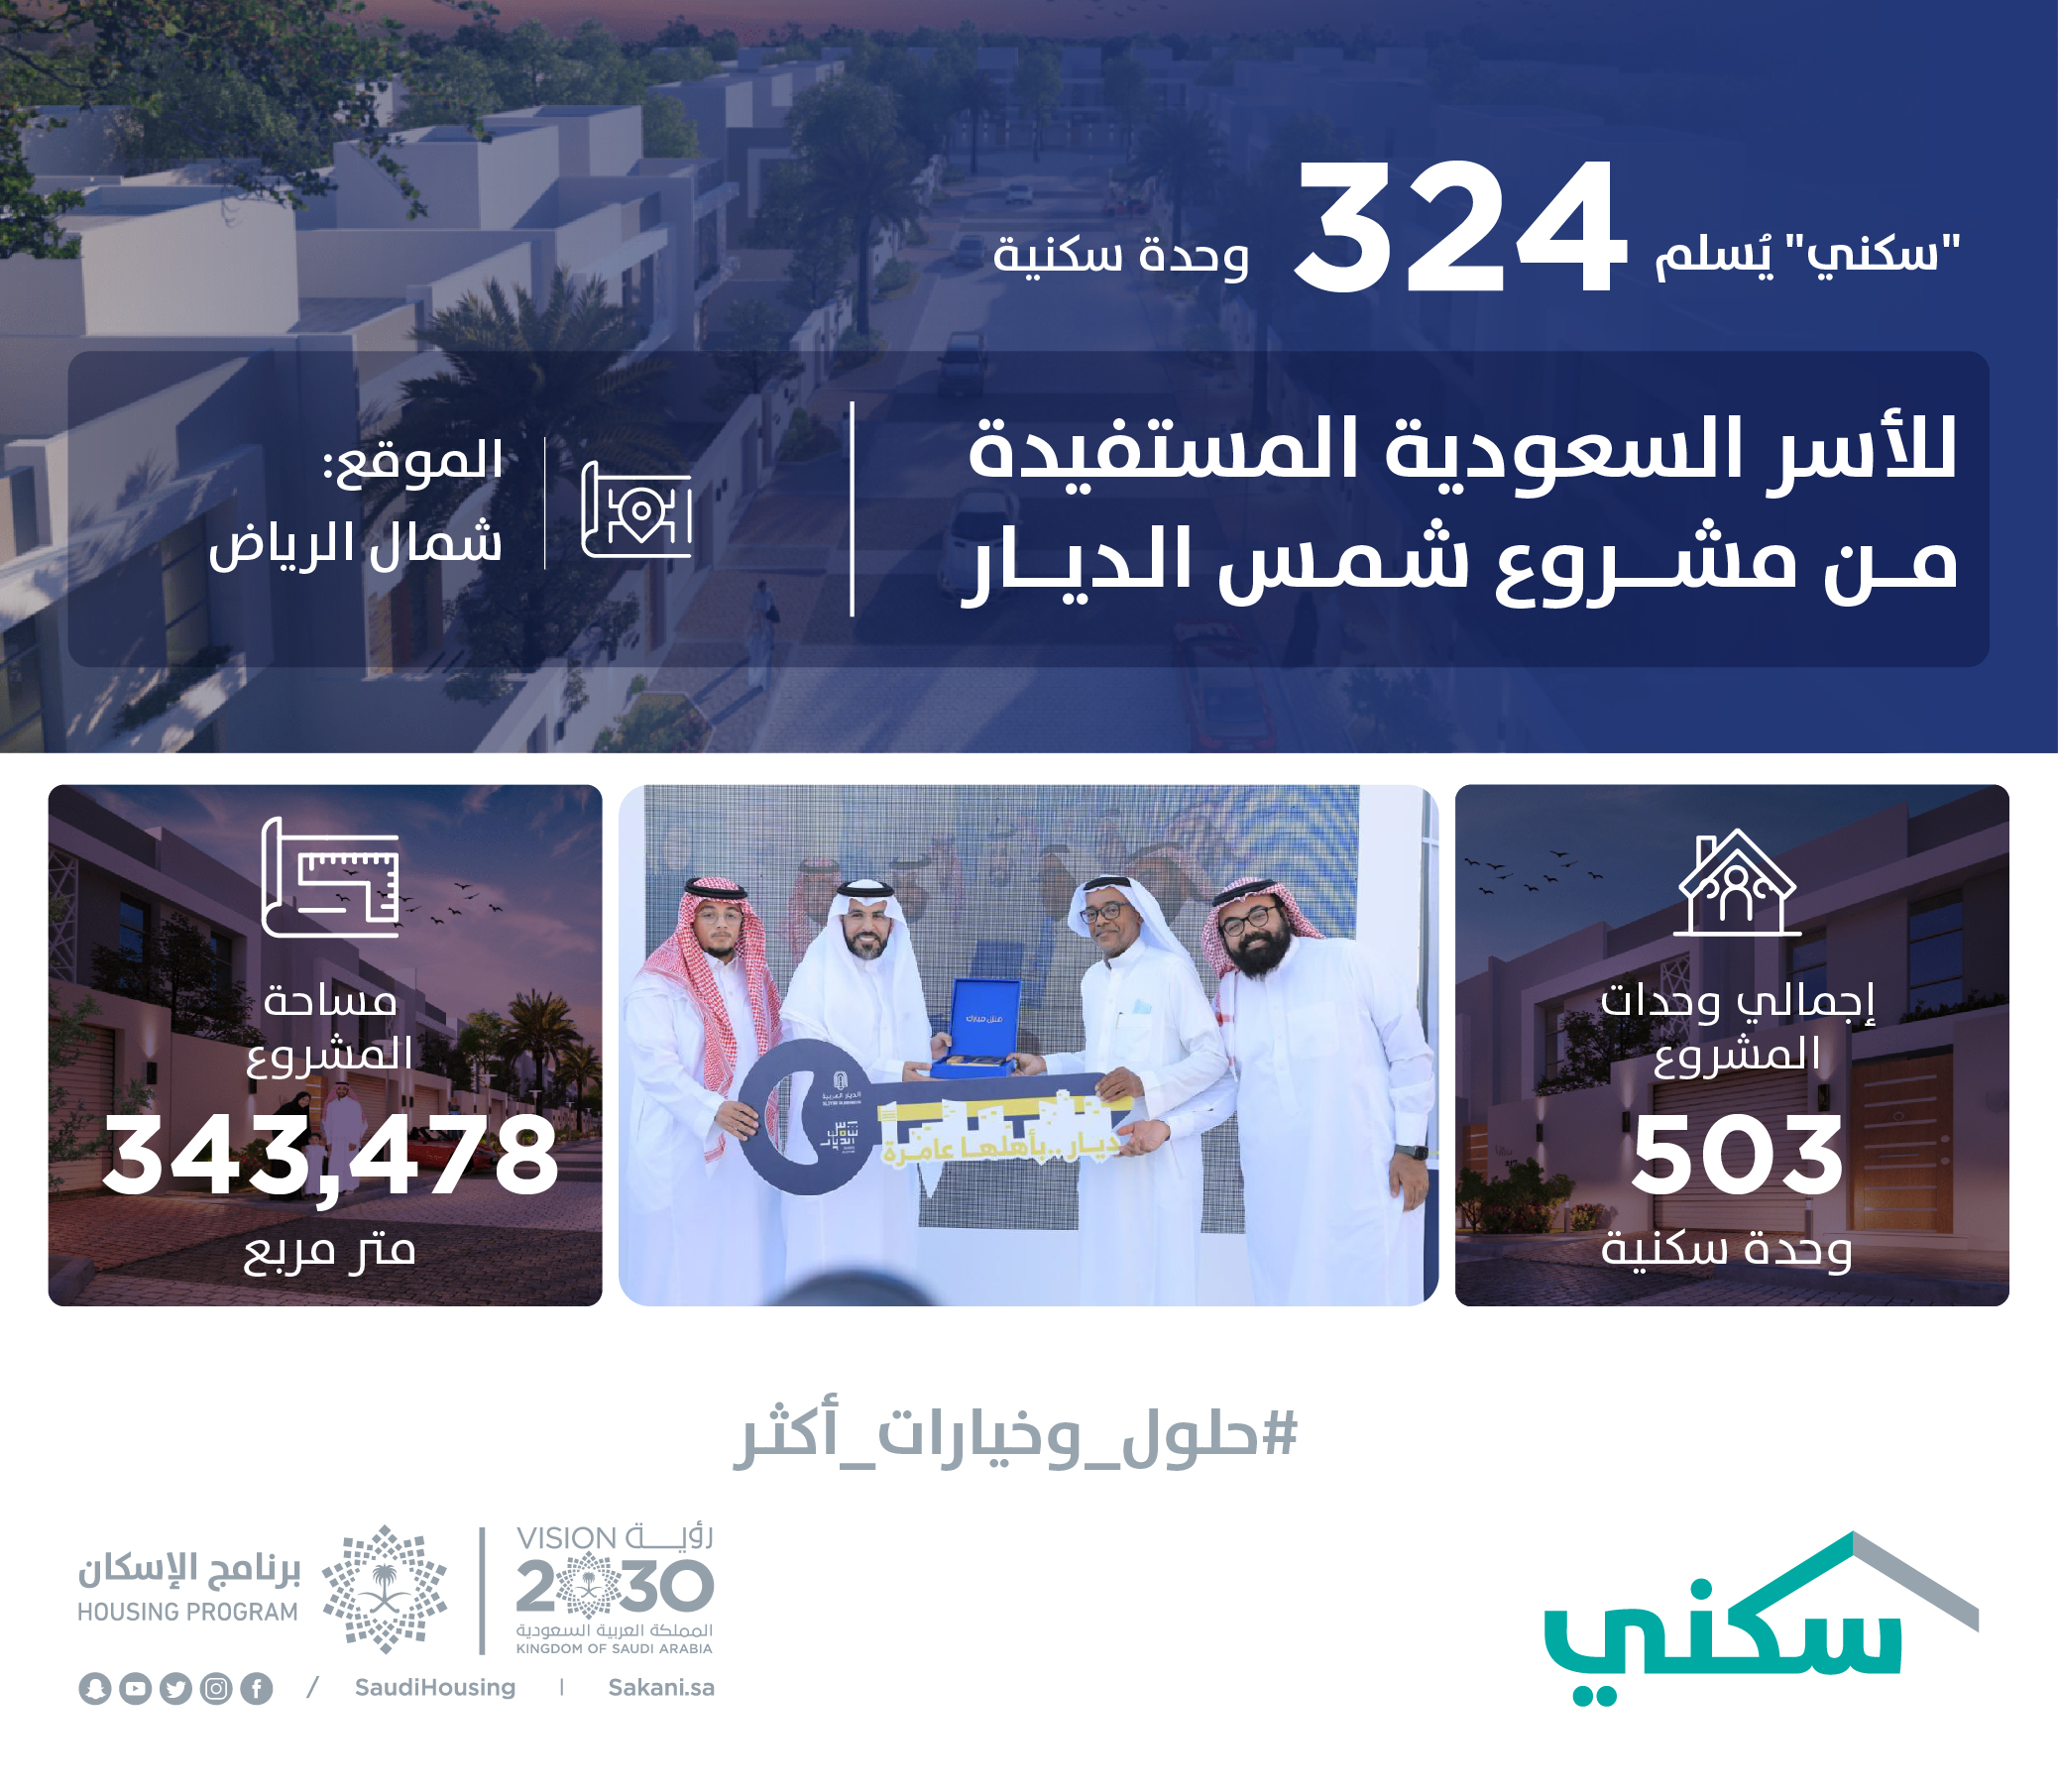 "سكني" يُسلم 324 وحدة سكنية للأسر السعودية المستفيدة من مشروع شمس الديار بالرياض